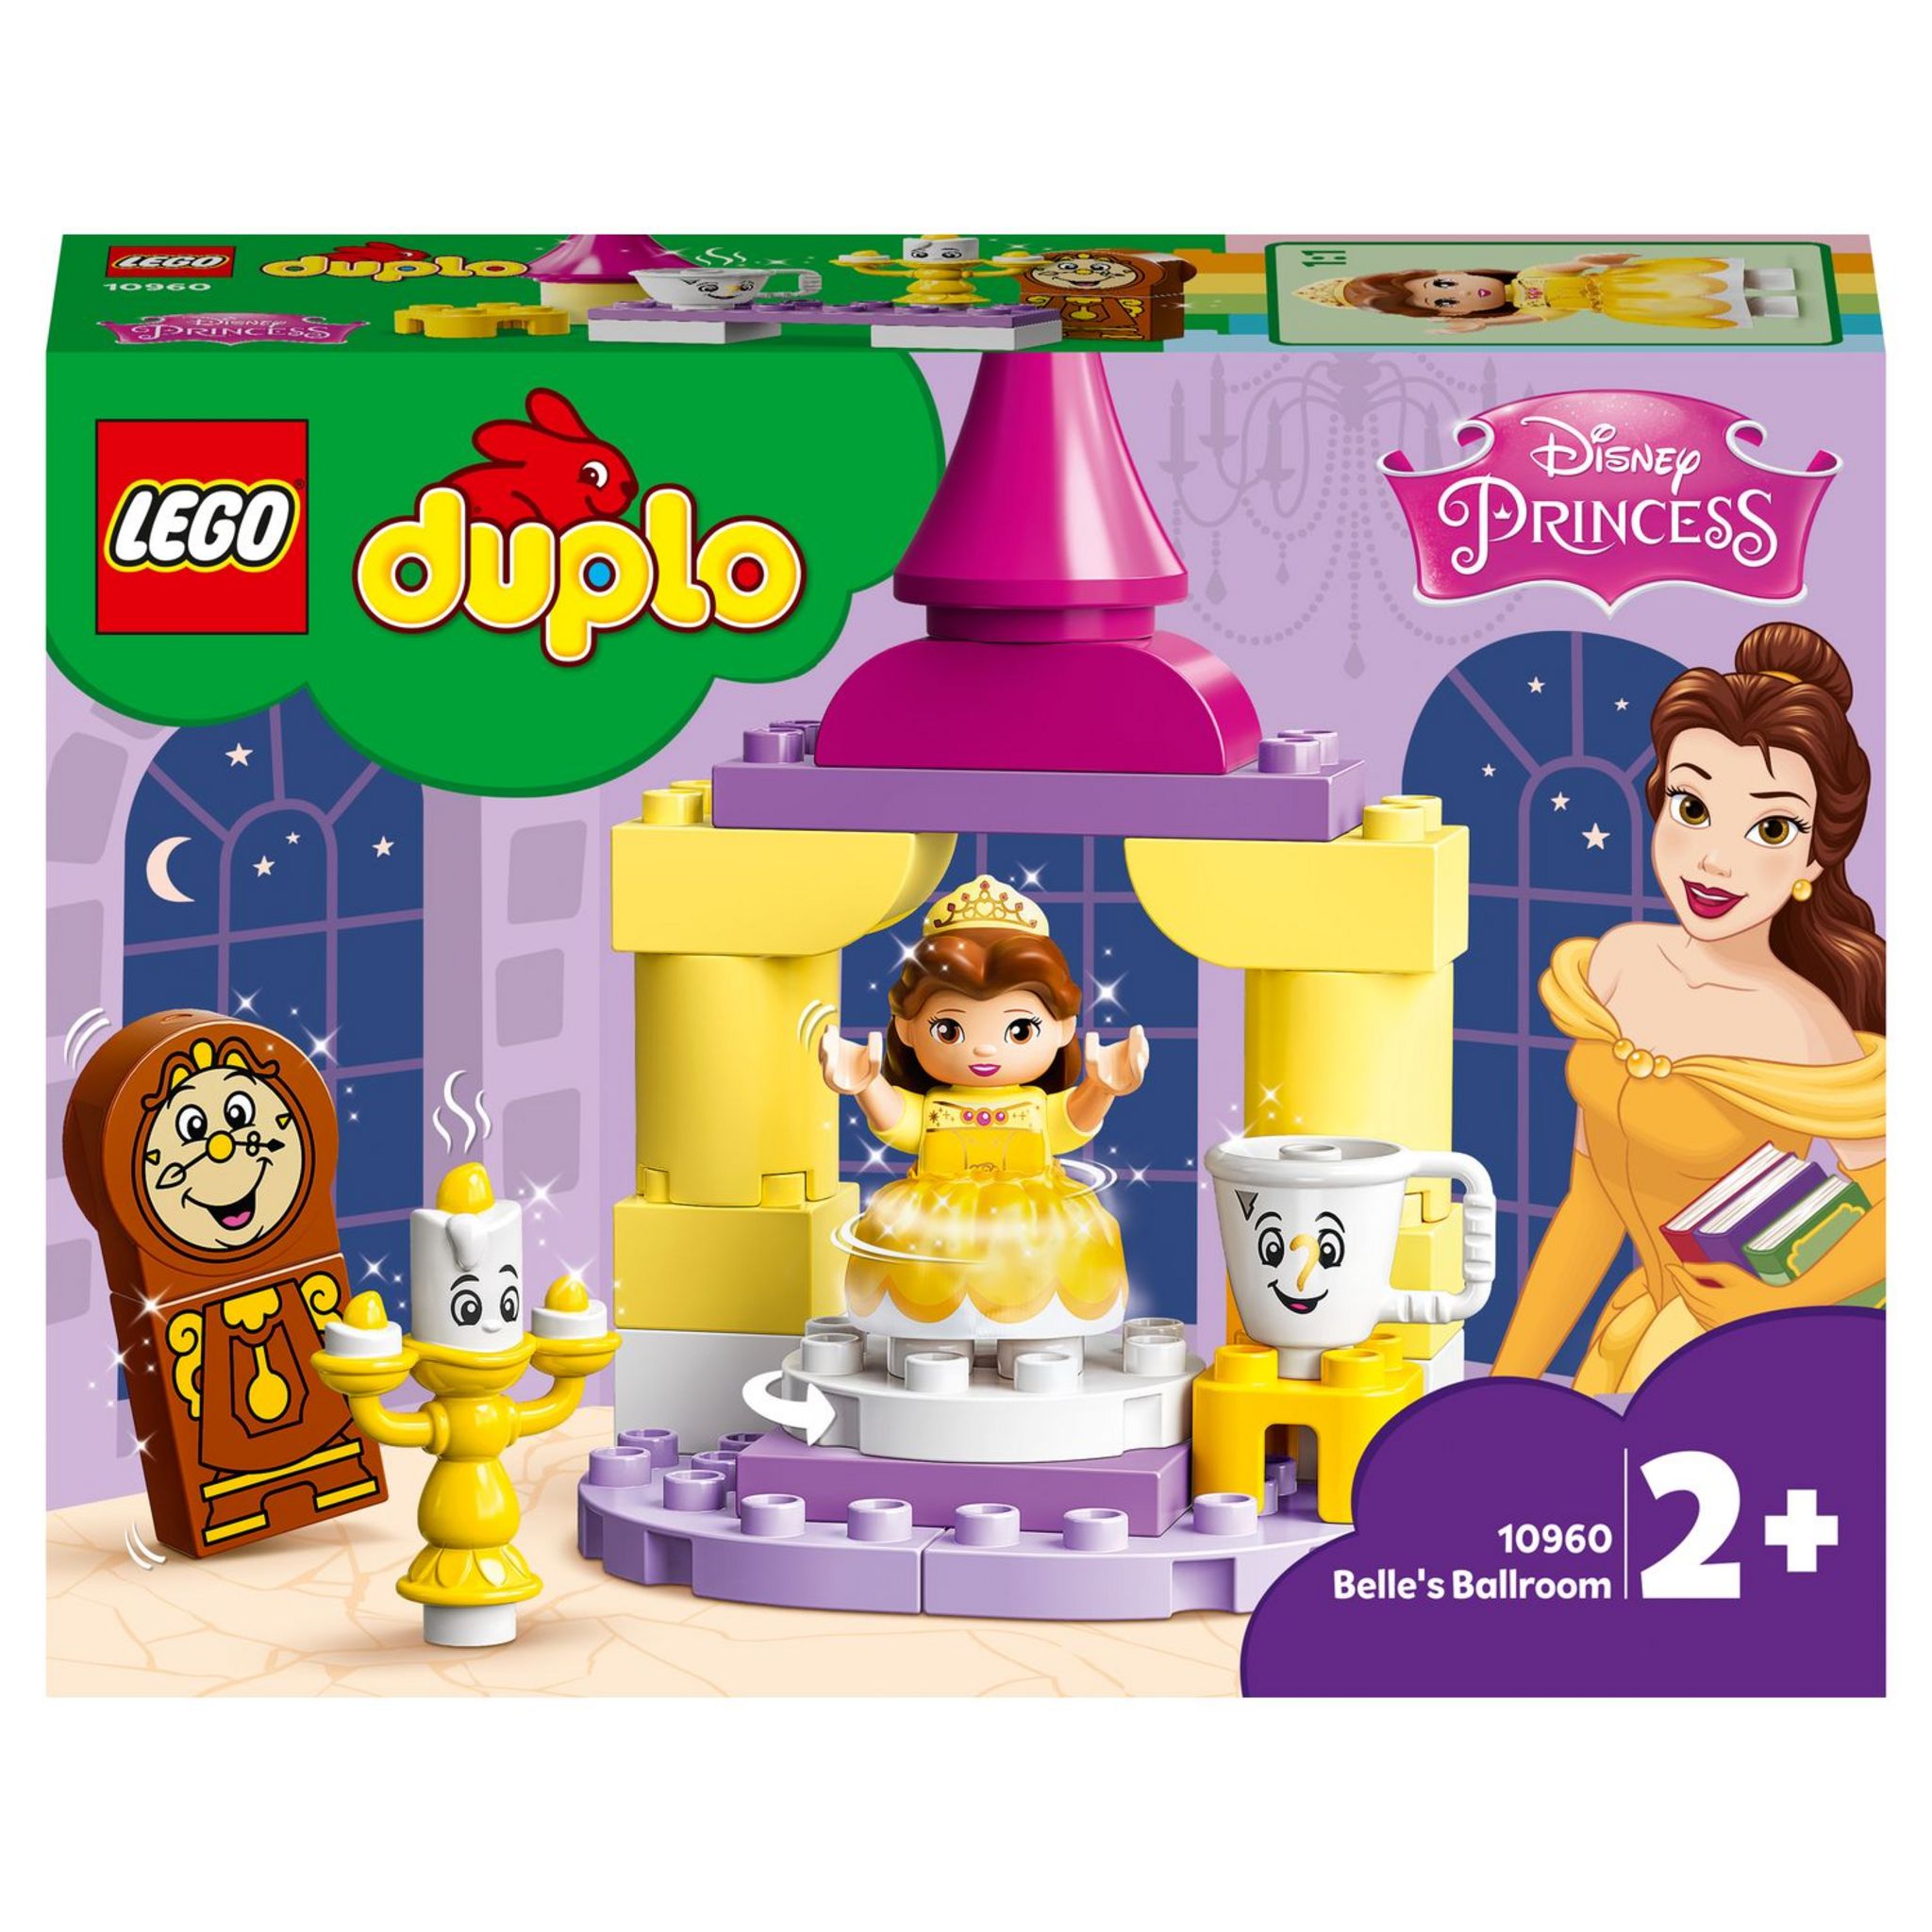 LEGO 10941 DUPLO Disney Le Train d'Anniversaire de Mickey et Minnie Jouet  pour Enfant de 2 ans et plus avec Train et Figurines